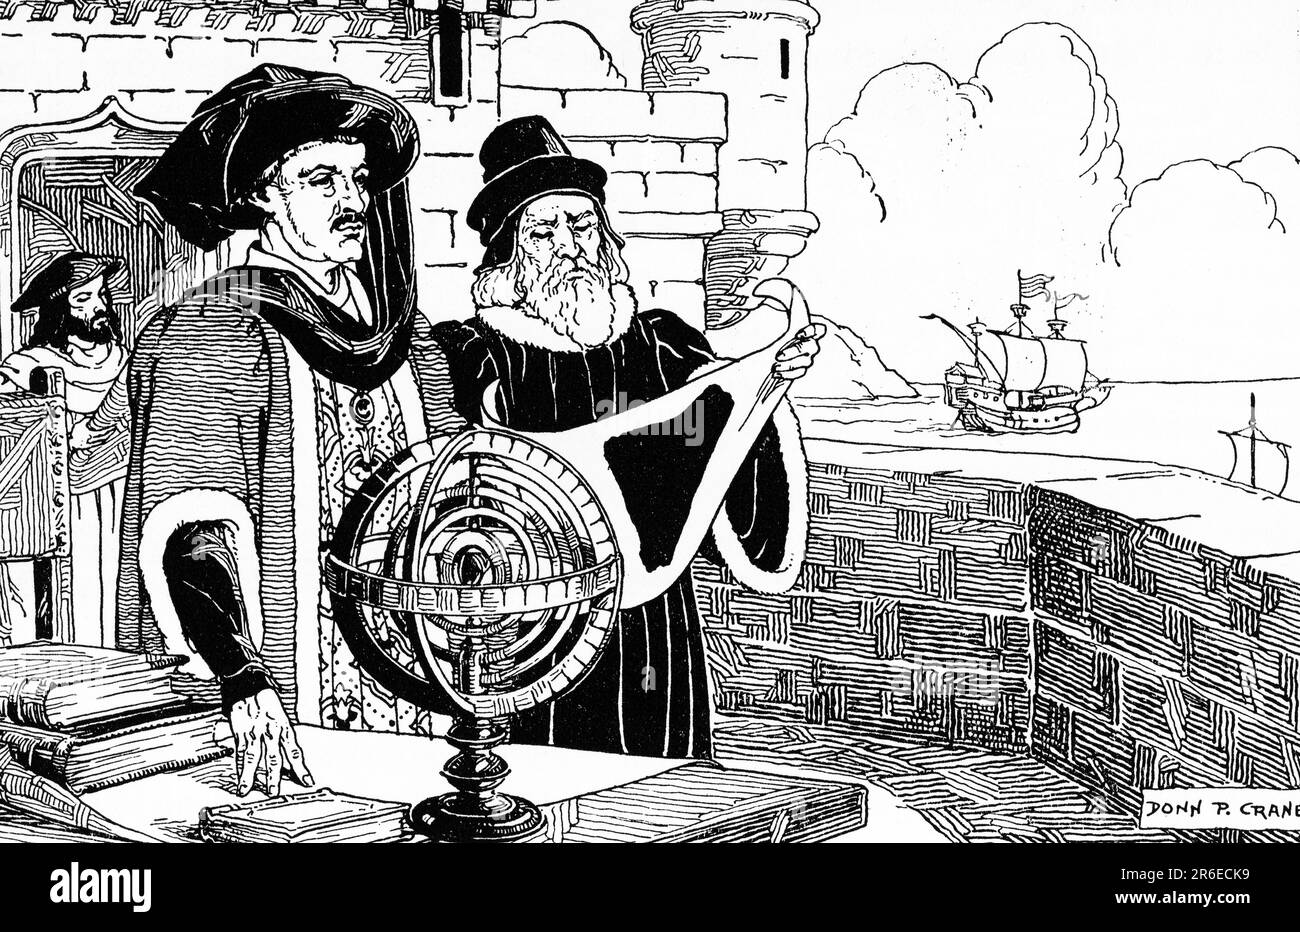 Principe Enrico il navigatore (1394-1460). Di Donn Philip Crane (1878-1944). Dom Henrique di Portogallo, Duca di Viseu (1394-1460), meglio noto come Principe Enrico il Navigatore, fu una figura centrale nei primi giorni dell'Impero portoghese e nel 15th ° secolo scoperte marittime europee e l'espansione marittima. Foto Stock